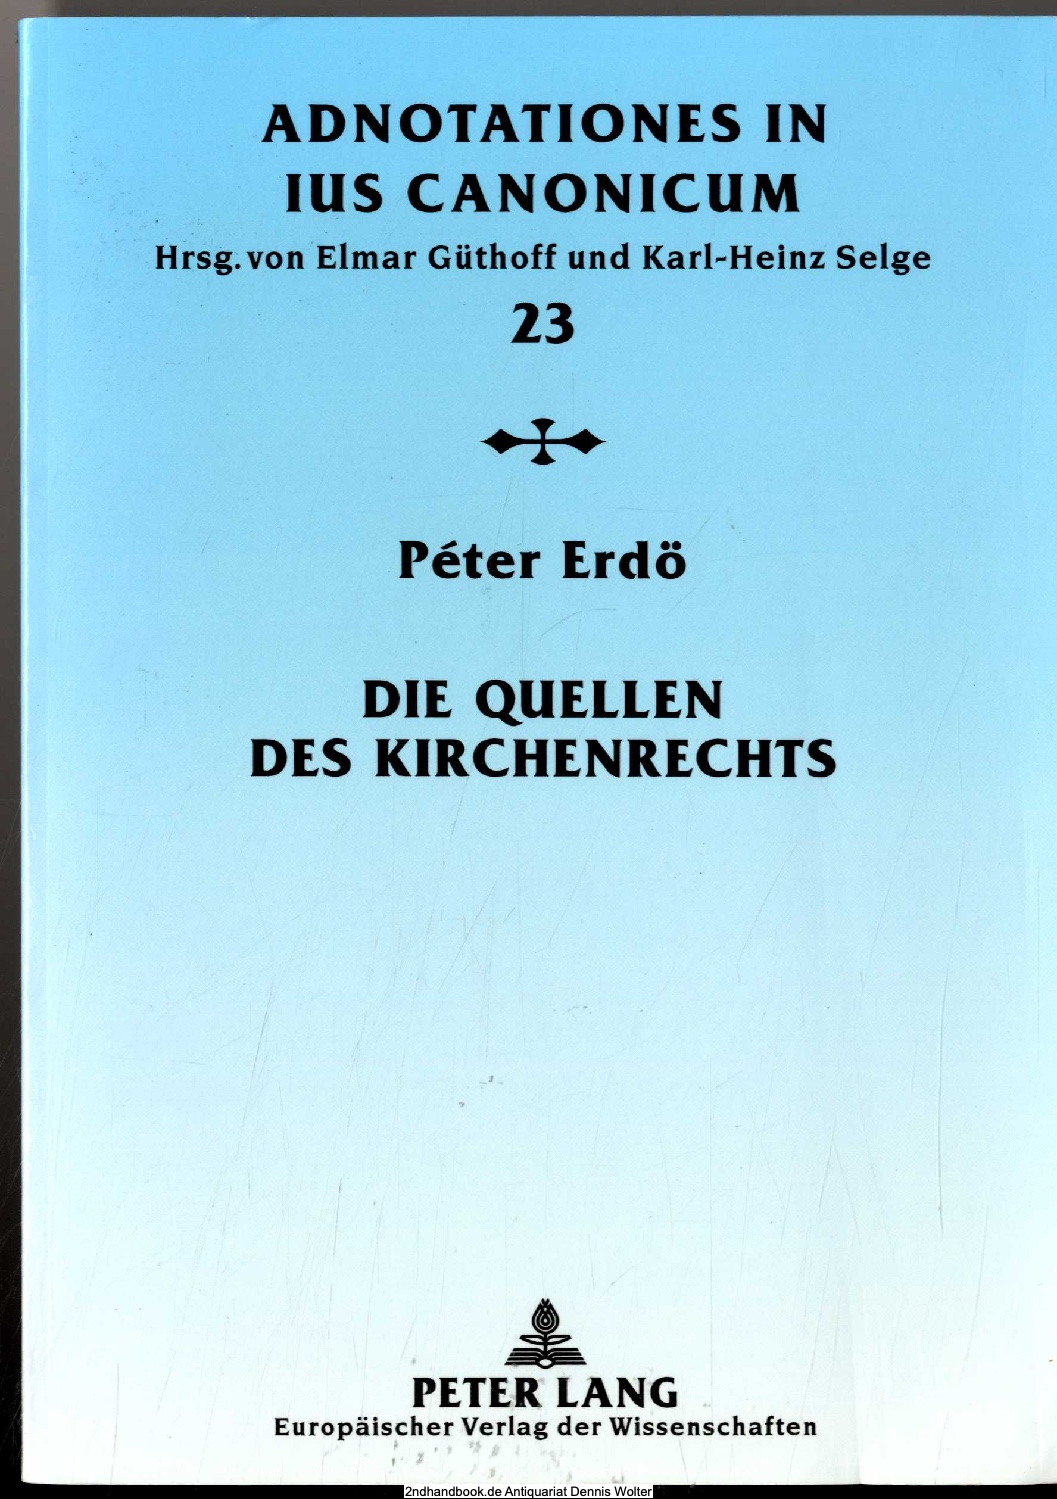 Die Quellen des Kirchenrechts : eine geschichtliche Einführung - Peter Erdö. [Dt. Übers. von Philip Gudenus]